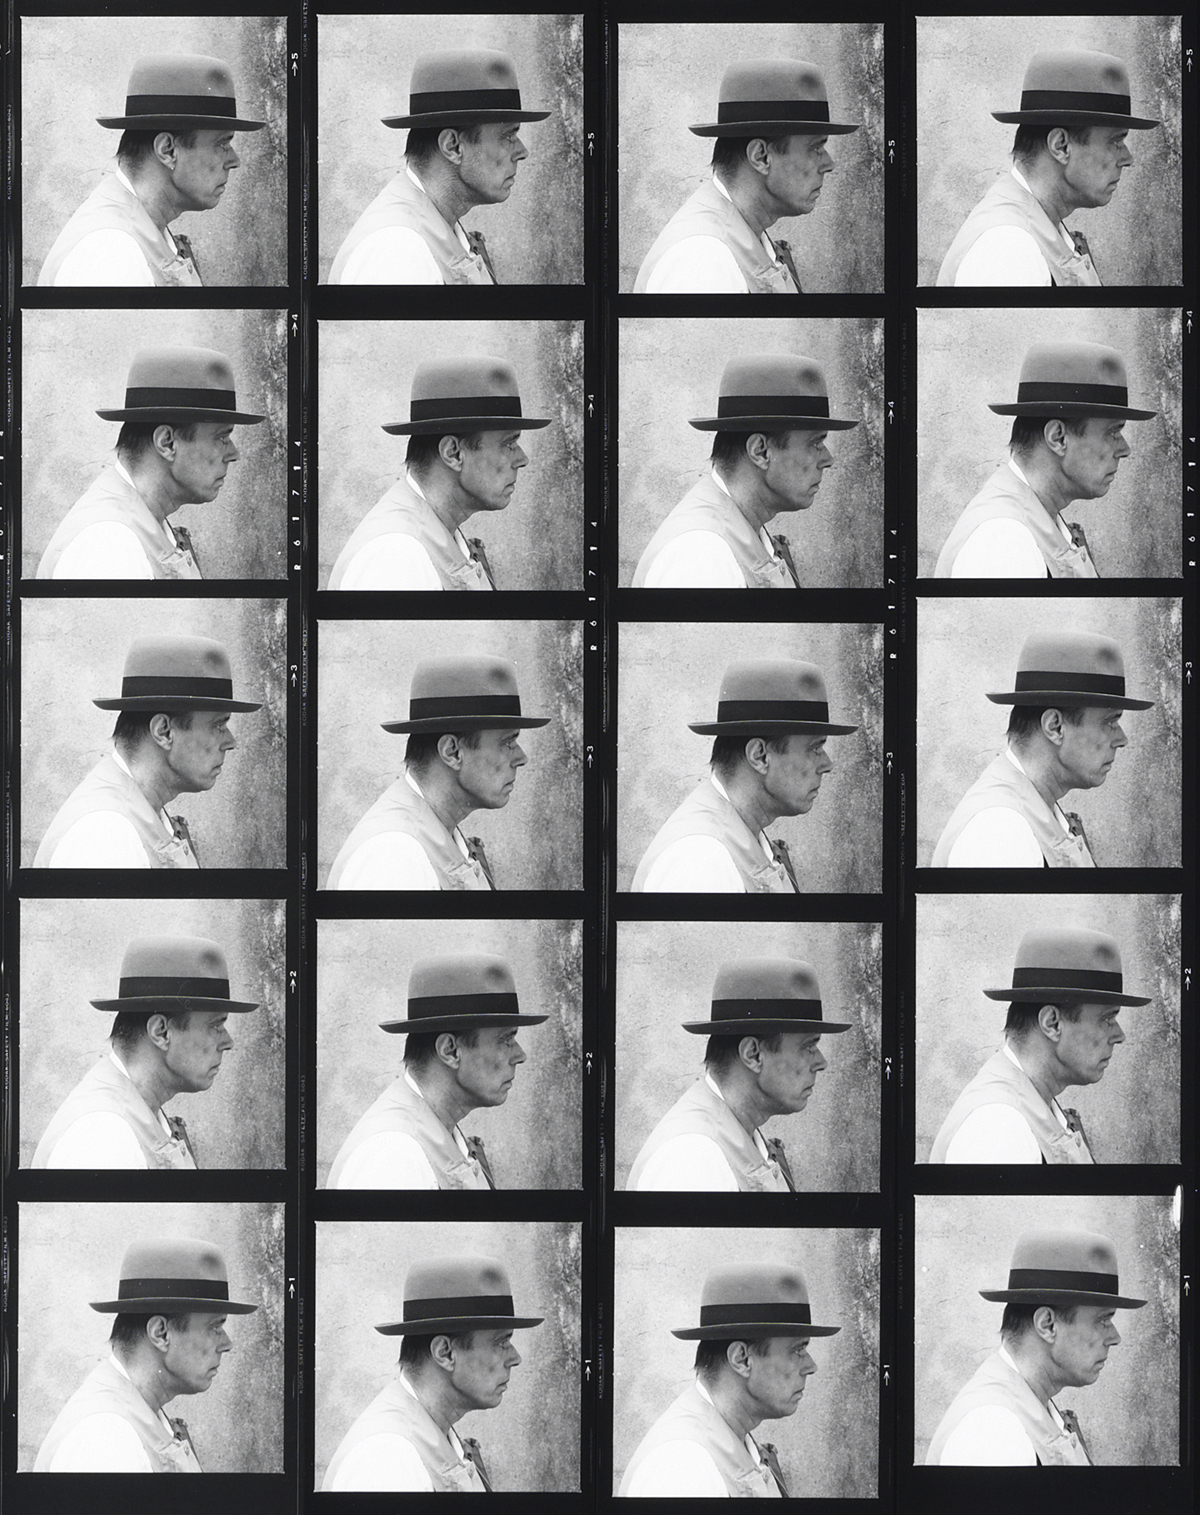 Joseph Beuys, 100 Profile Views